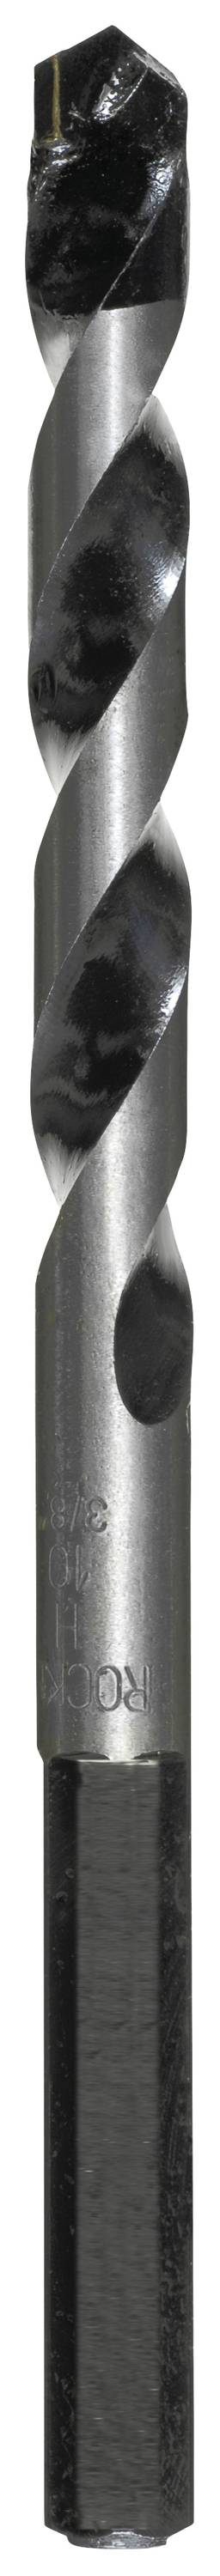 KWB 050720 Hartmetall Beton-Spiralbohrer 12 mm Gesamtlänge 150 mm Zylinderschaft 1 Stück (050720)